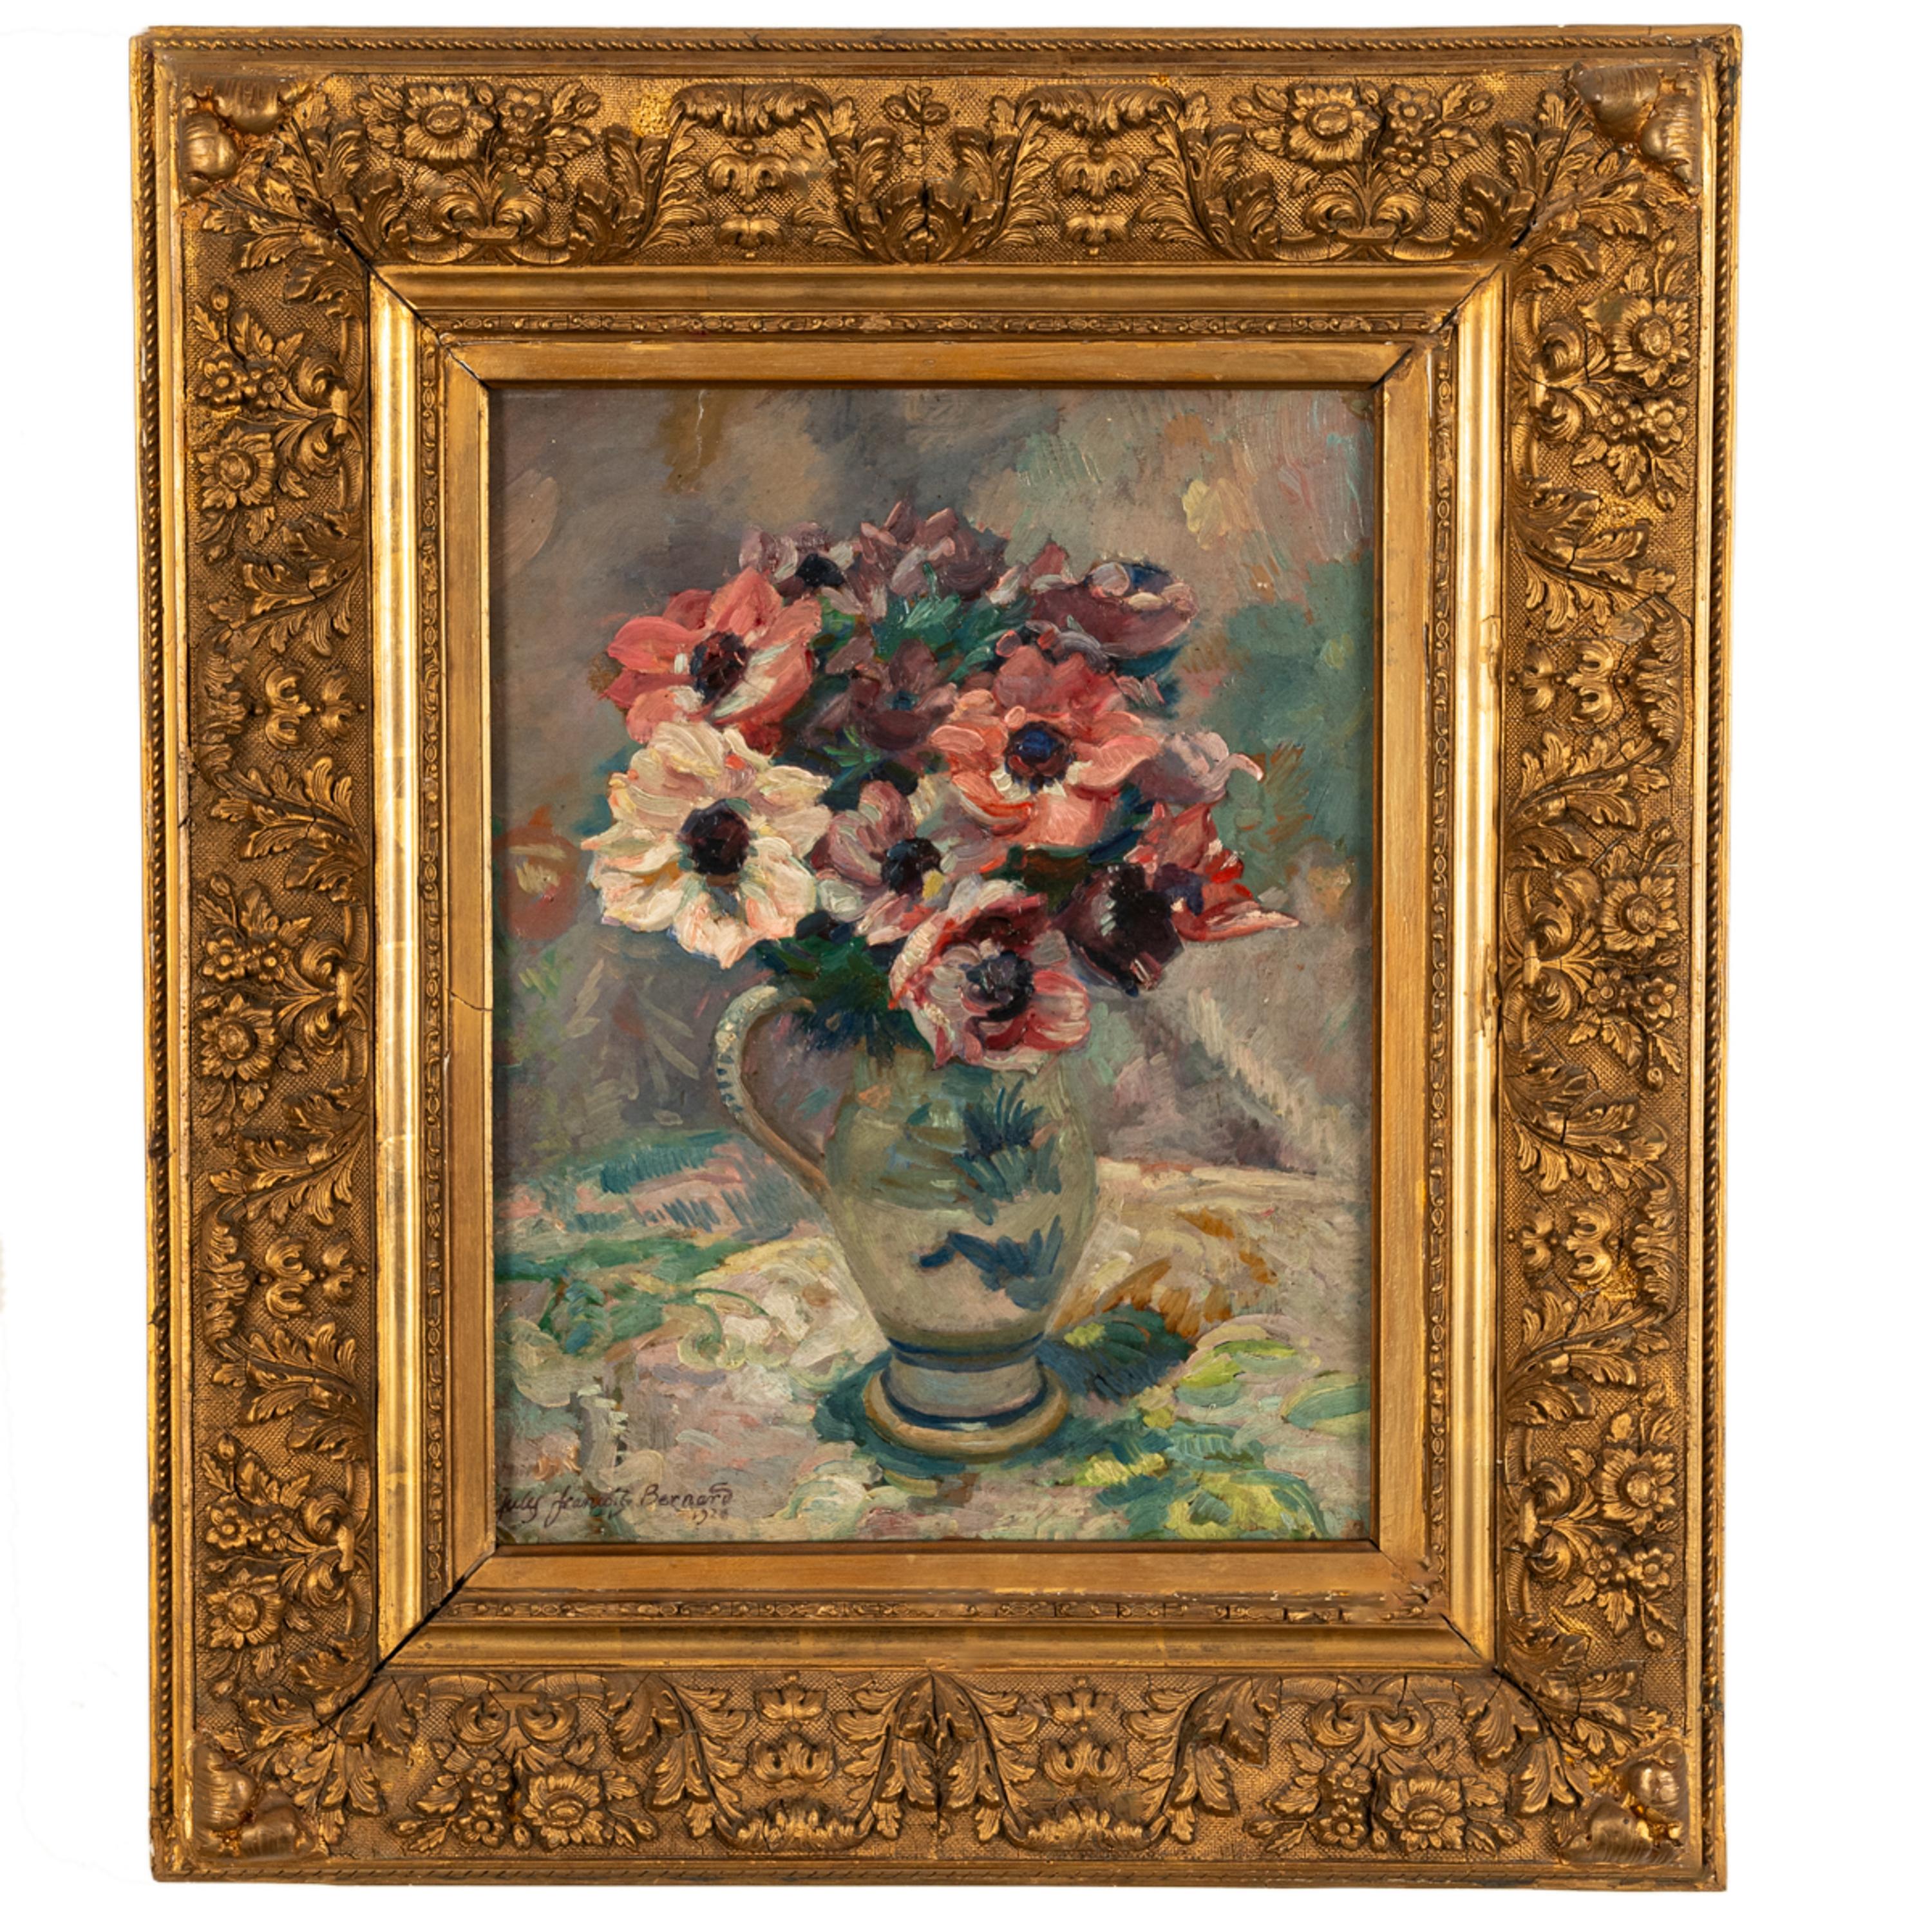 Une bonne nature morte florale française ancienne de l'artiste français Jules François Bernard (1884-1942), huile sur toile, datée de 1920.
Cette très belle nature morte impressionniste représente un bouquet de pivoines colorées dans une cruche à